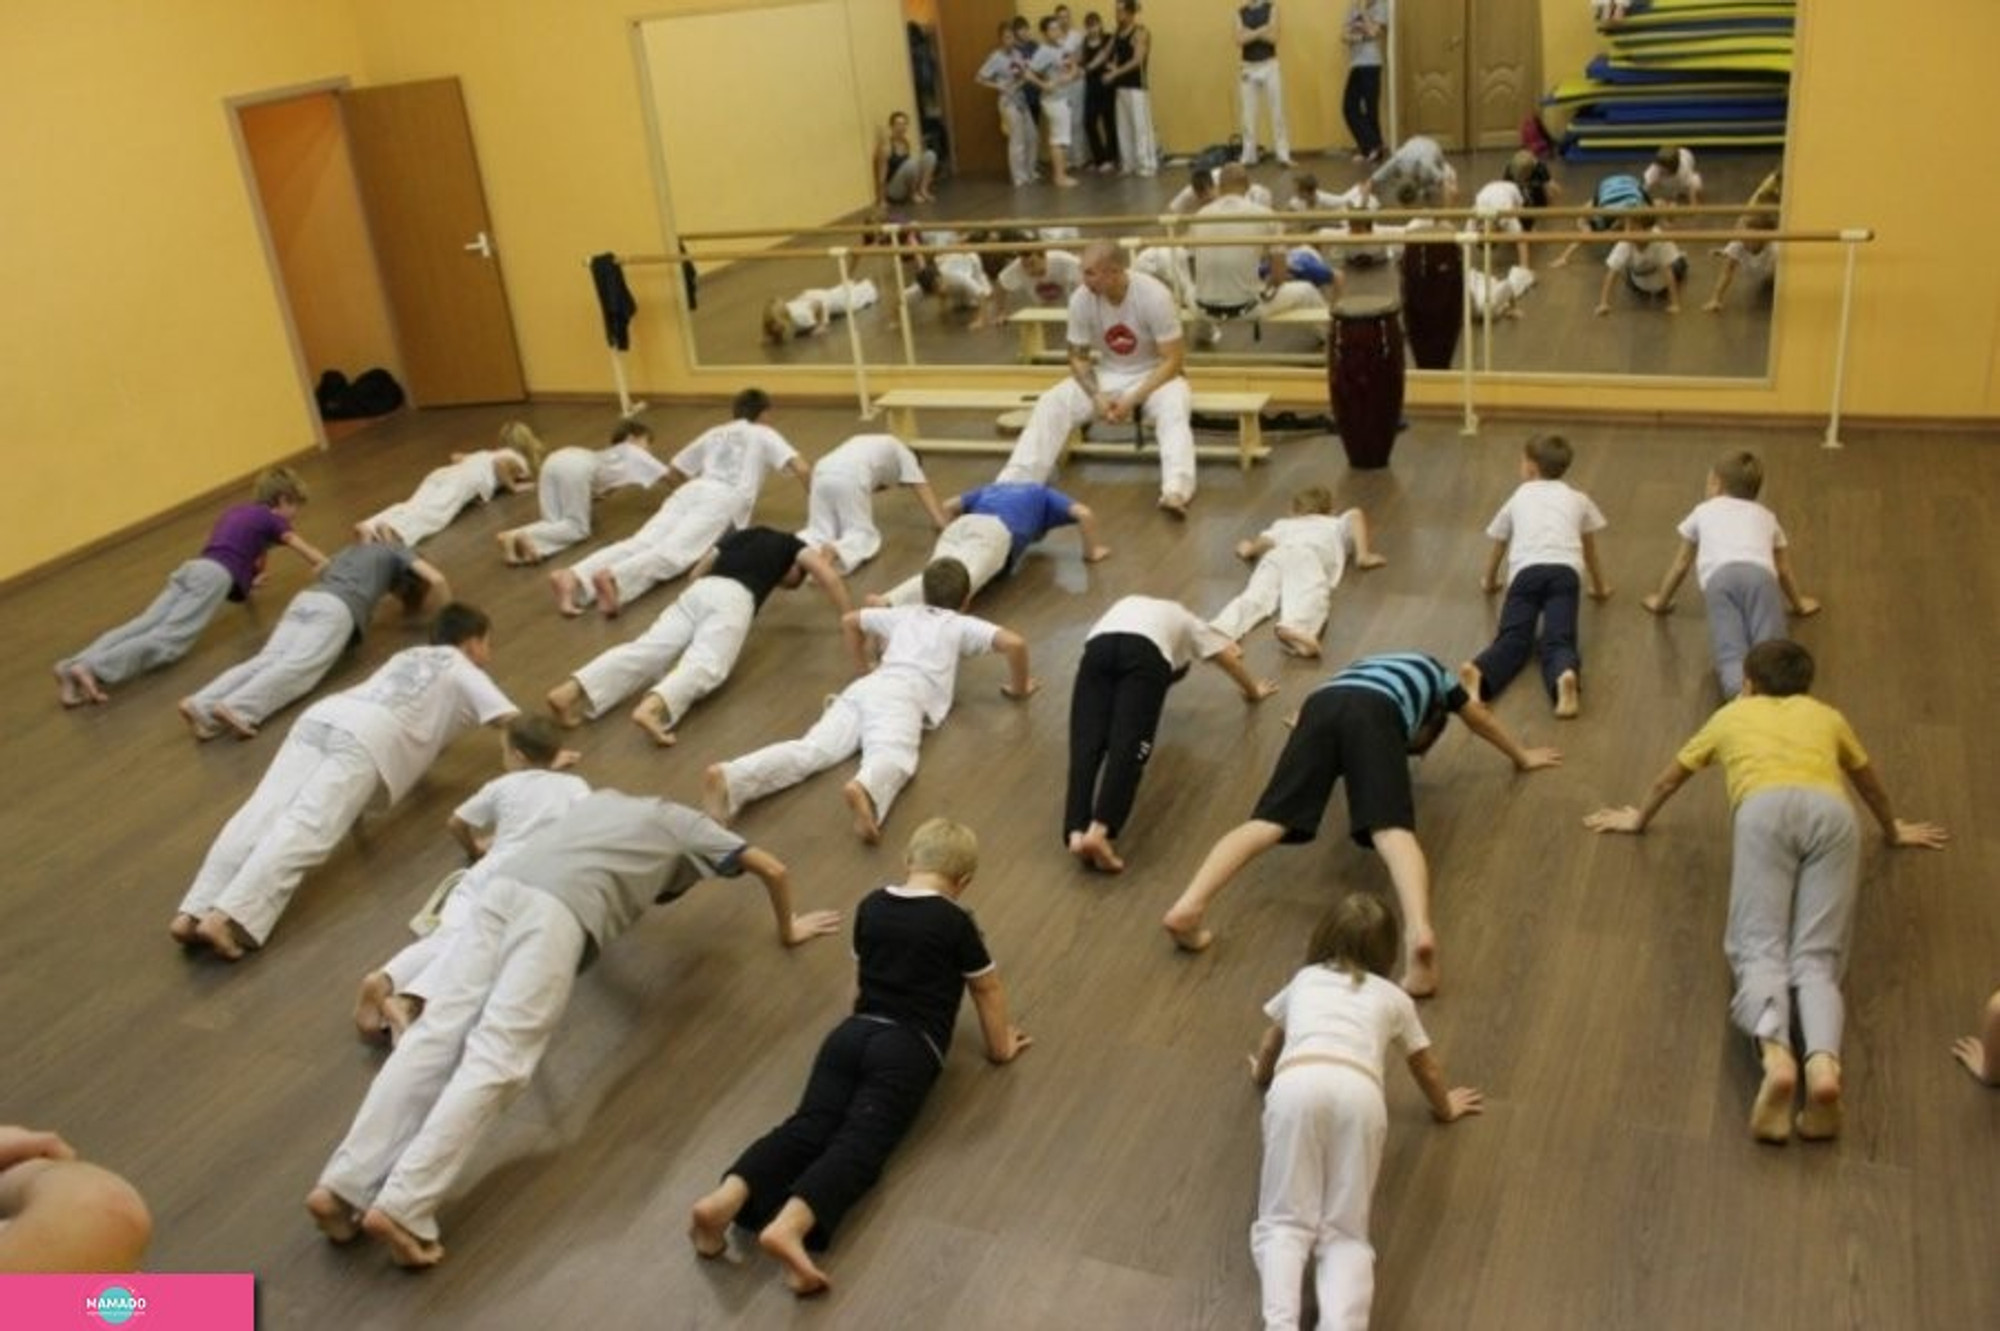 Capoeira Camara, "Капоэйра Камара" в Можайском районе, восточные единоборства для детей от 5 лет, Москва 